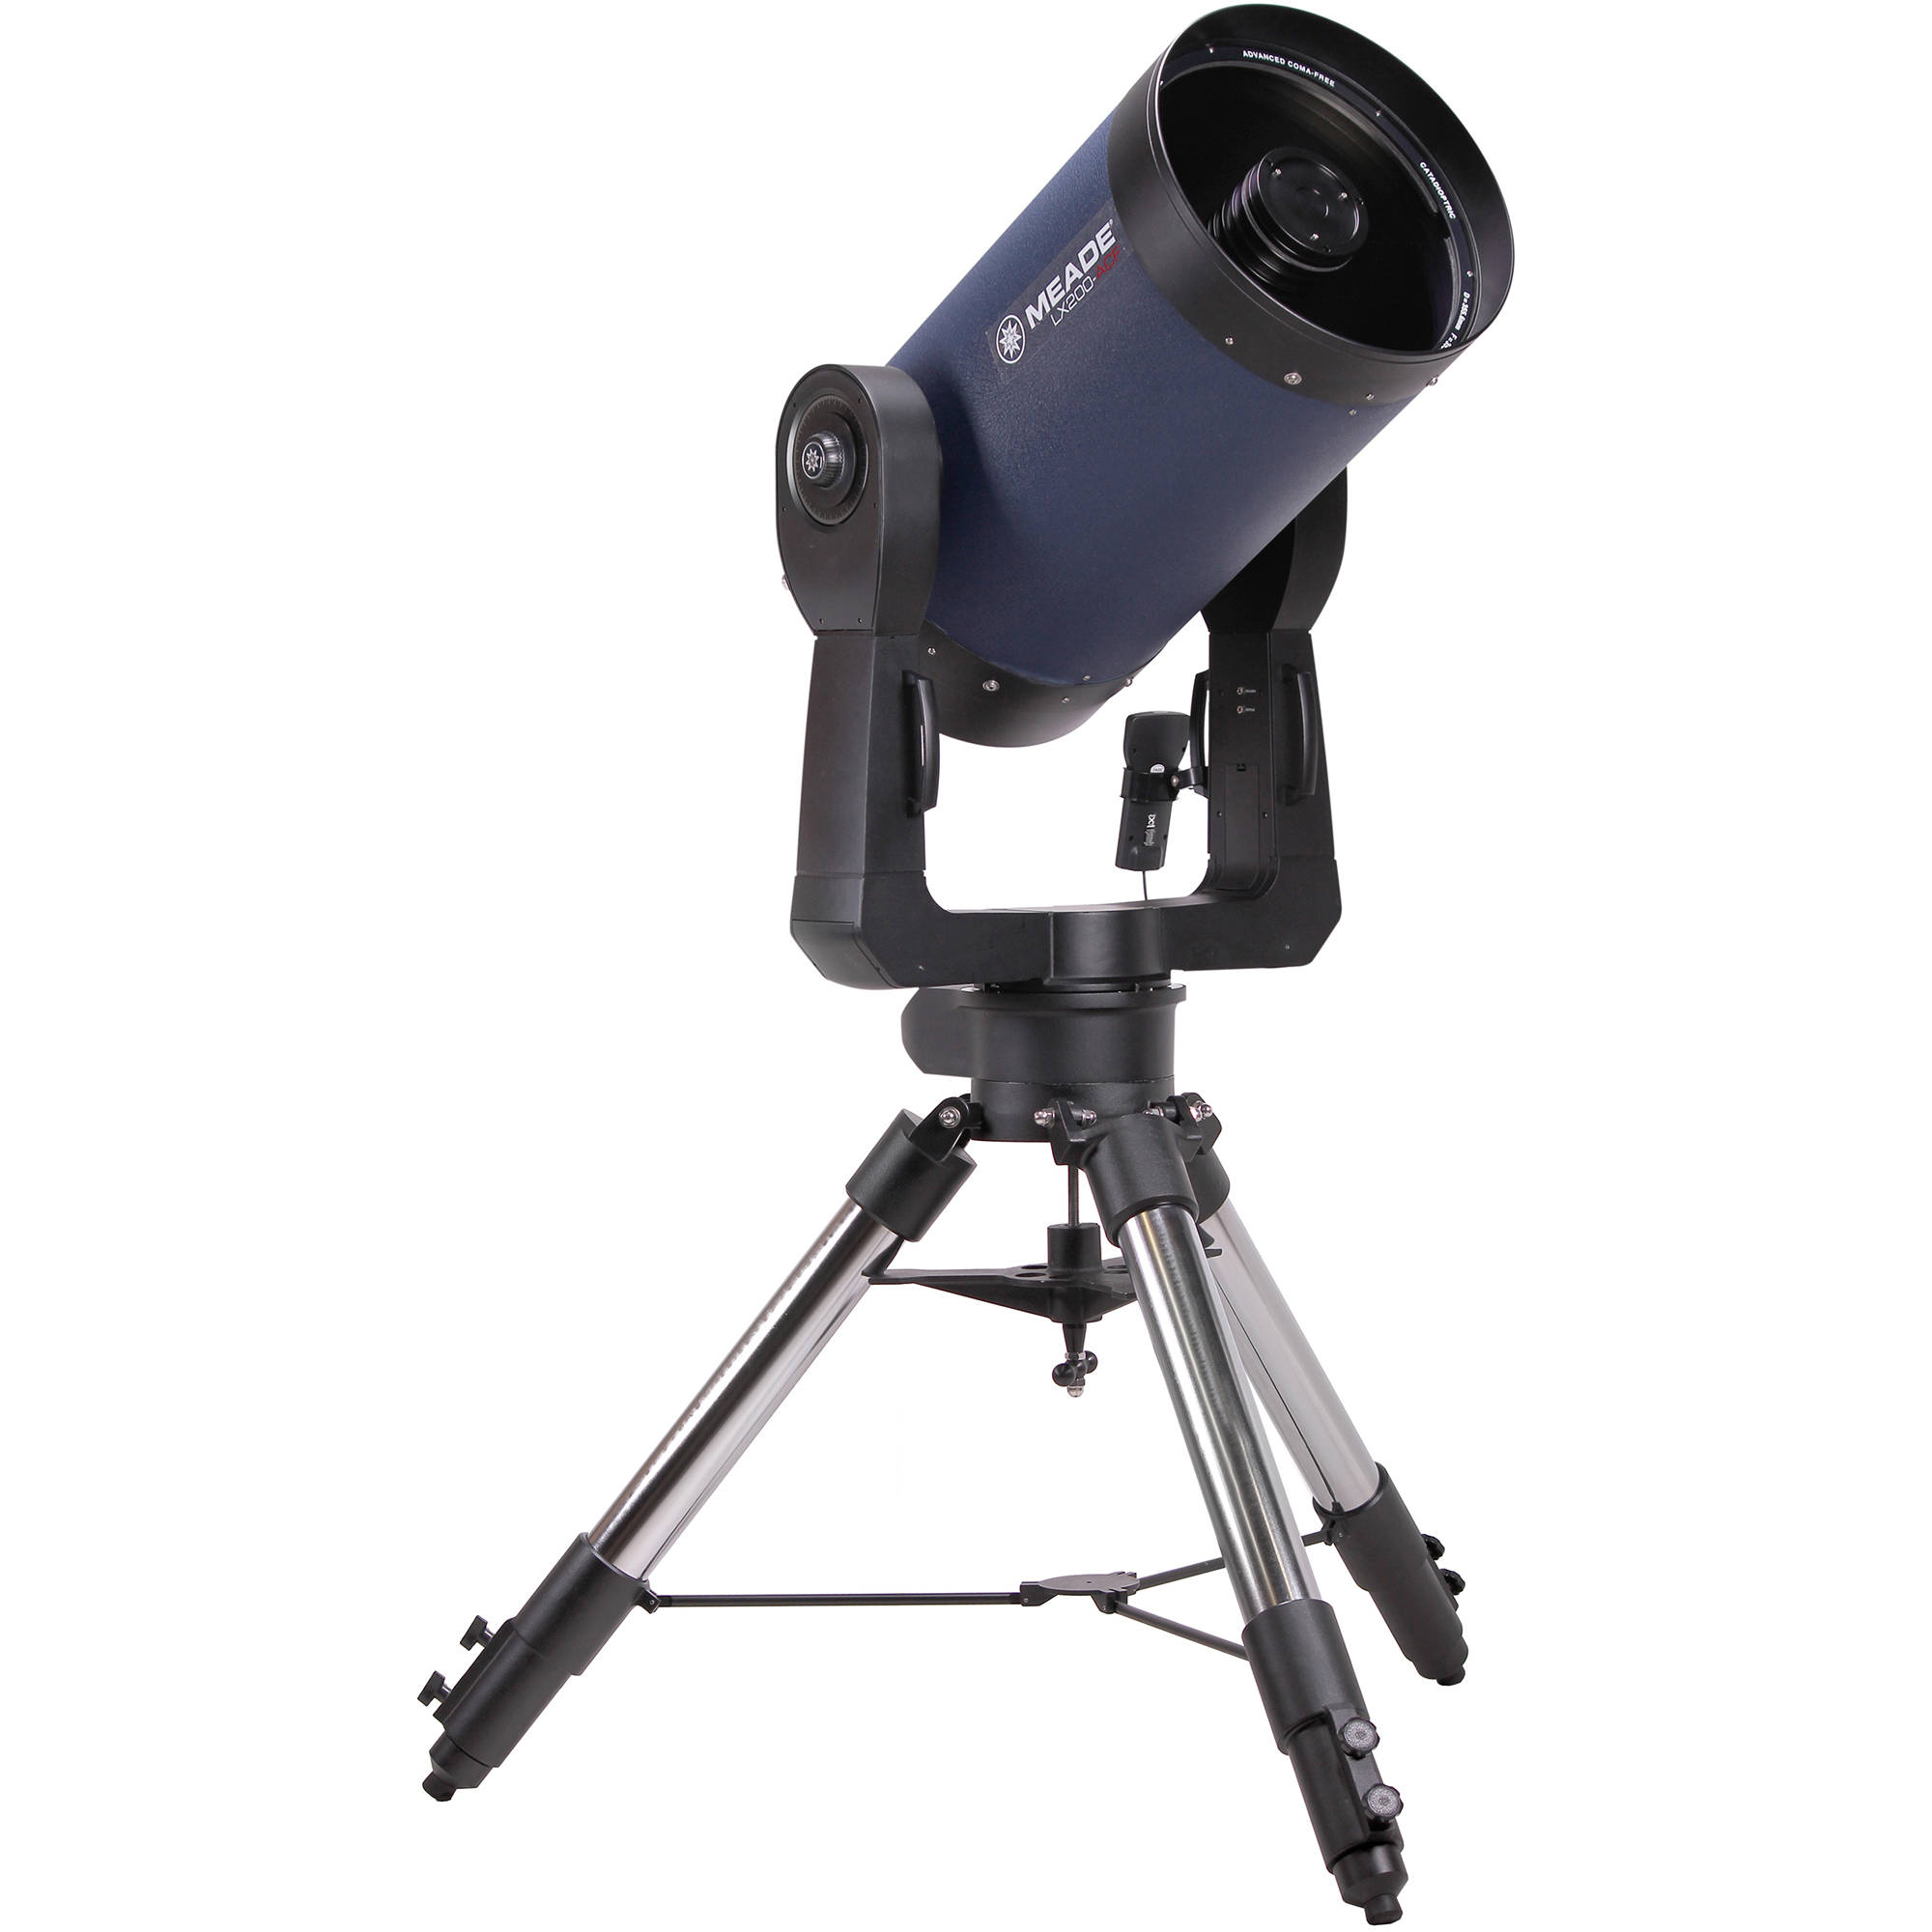 catadioptric telescope